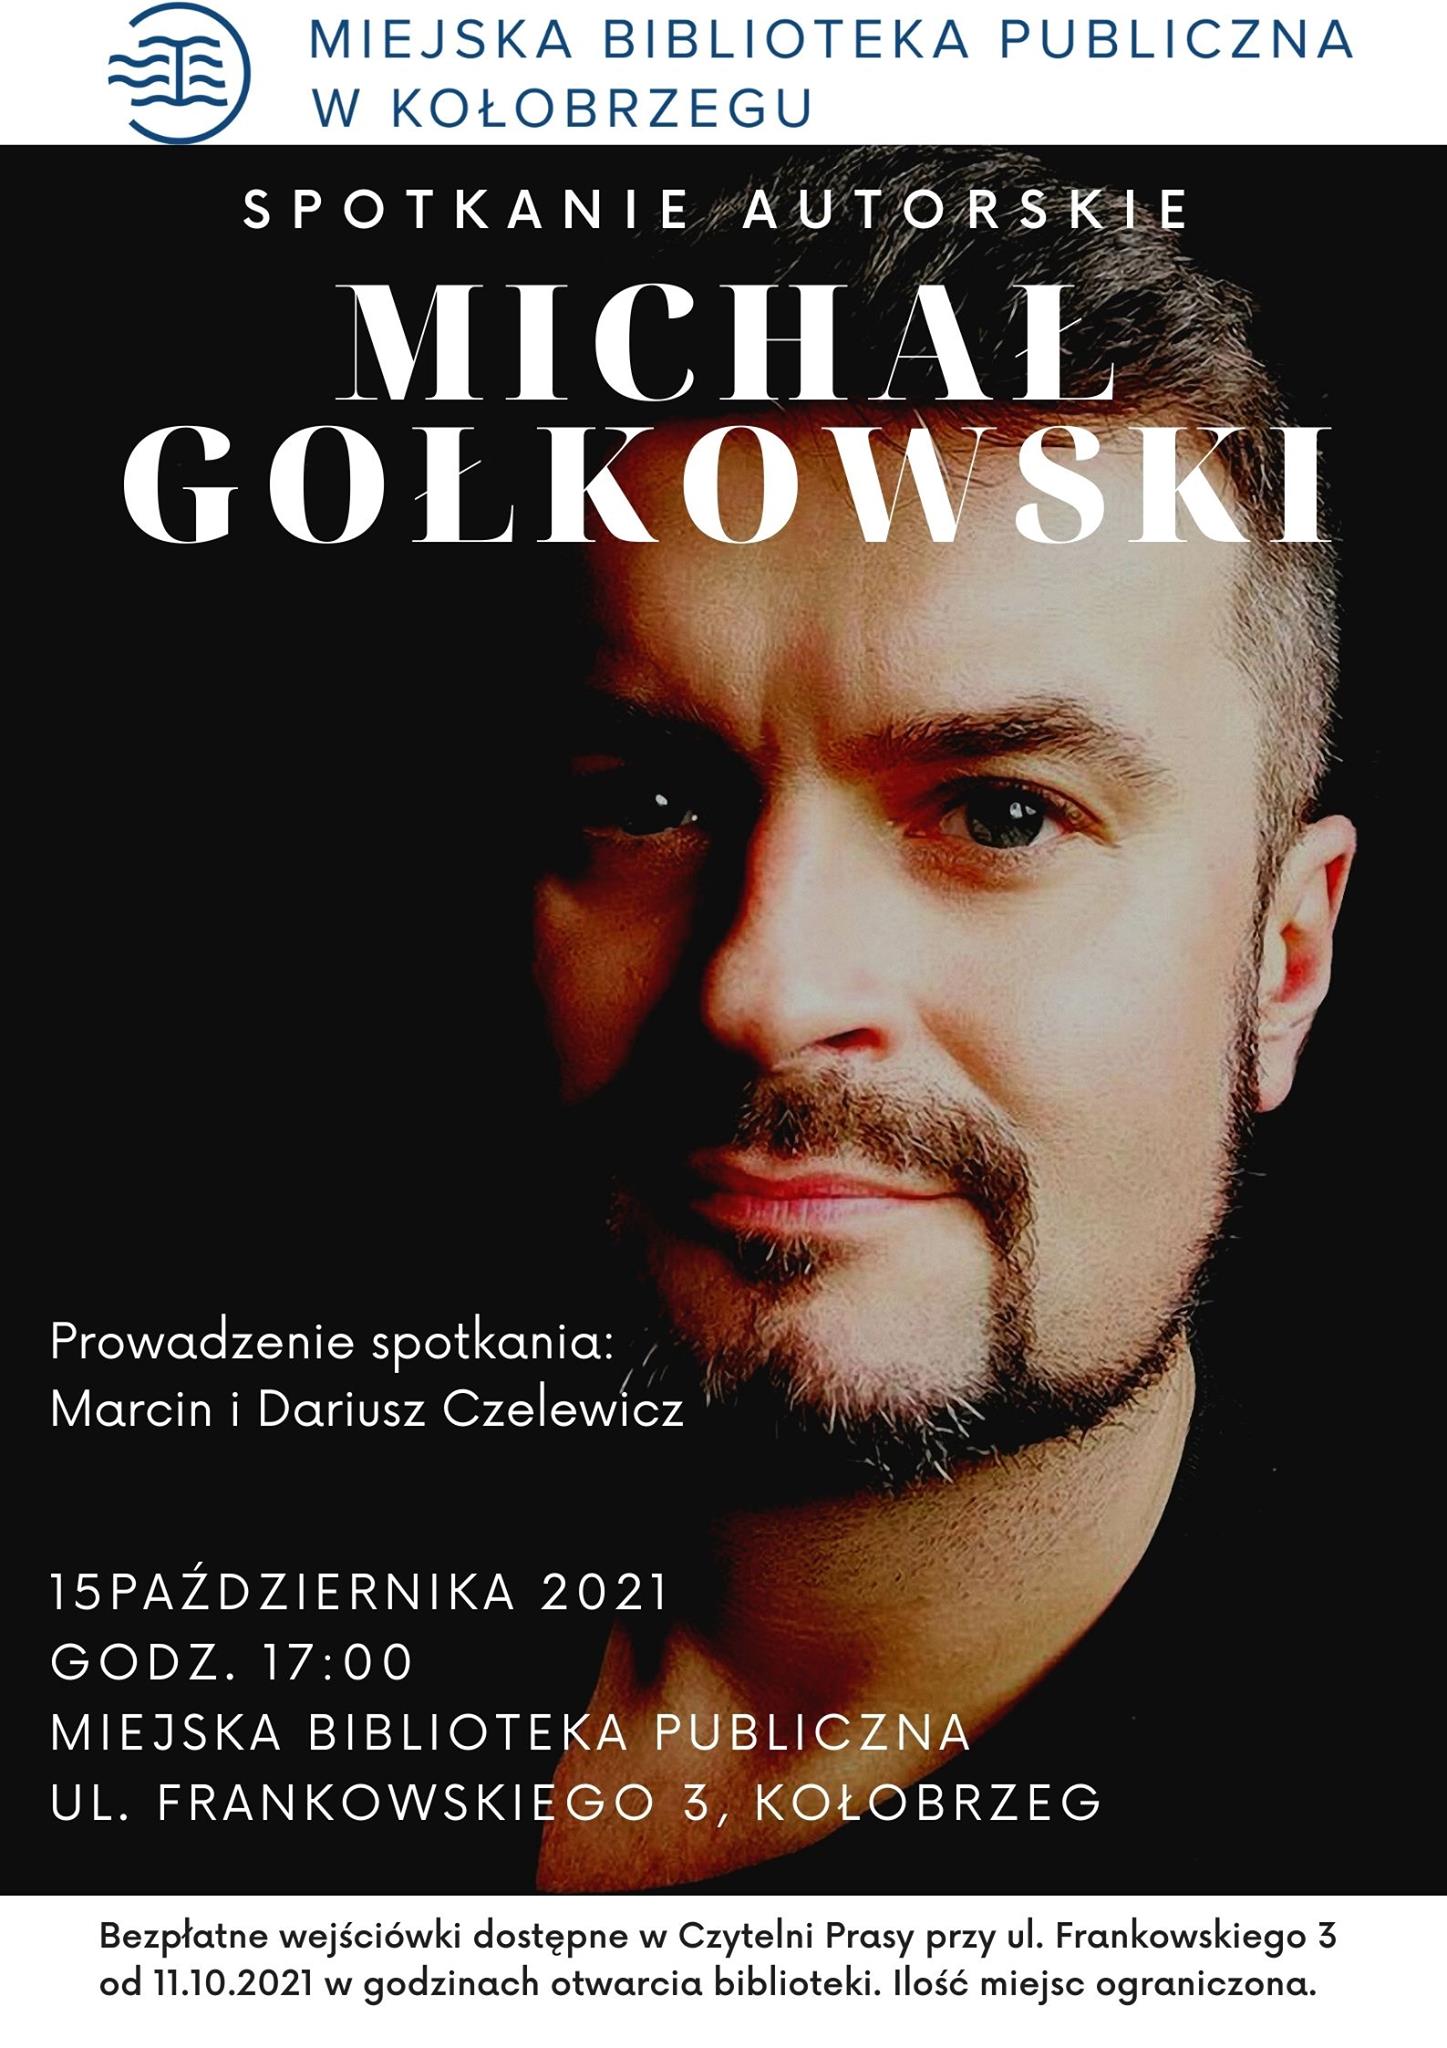 Michał Gołkowski - spotkanie autorskie